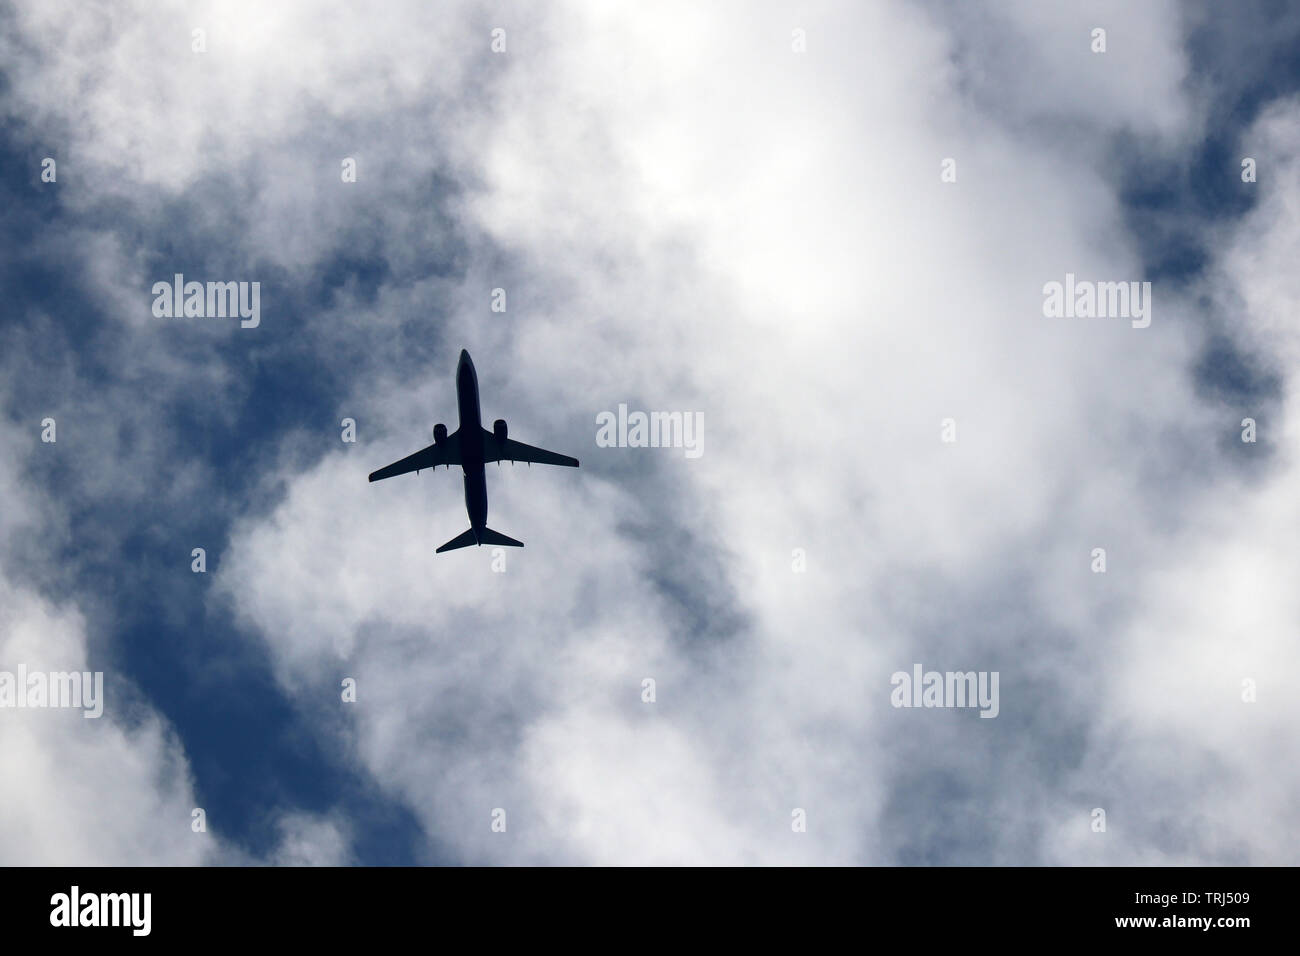 Vol d'un avion dans le ciel sur fond de nuages. Silhouette d'un avion commercial, concept de turbulence Banque D'Images